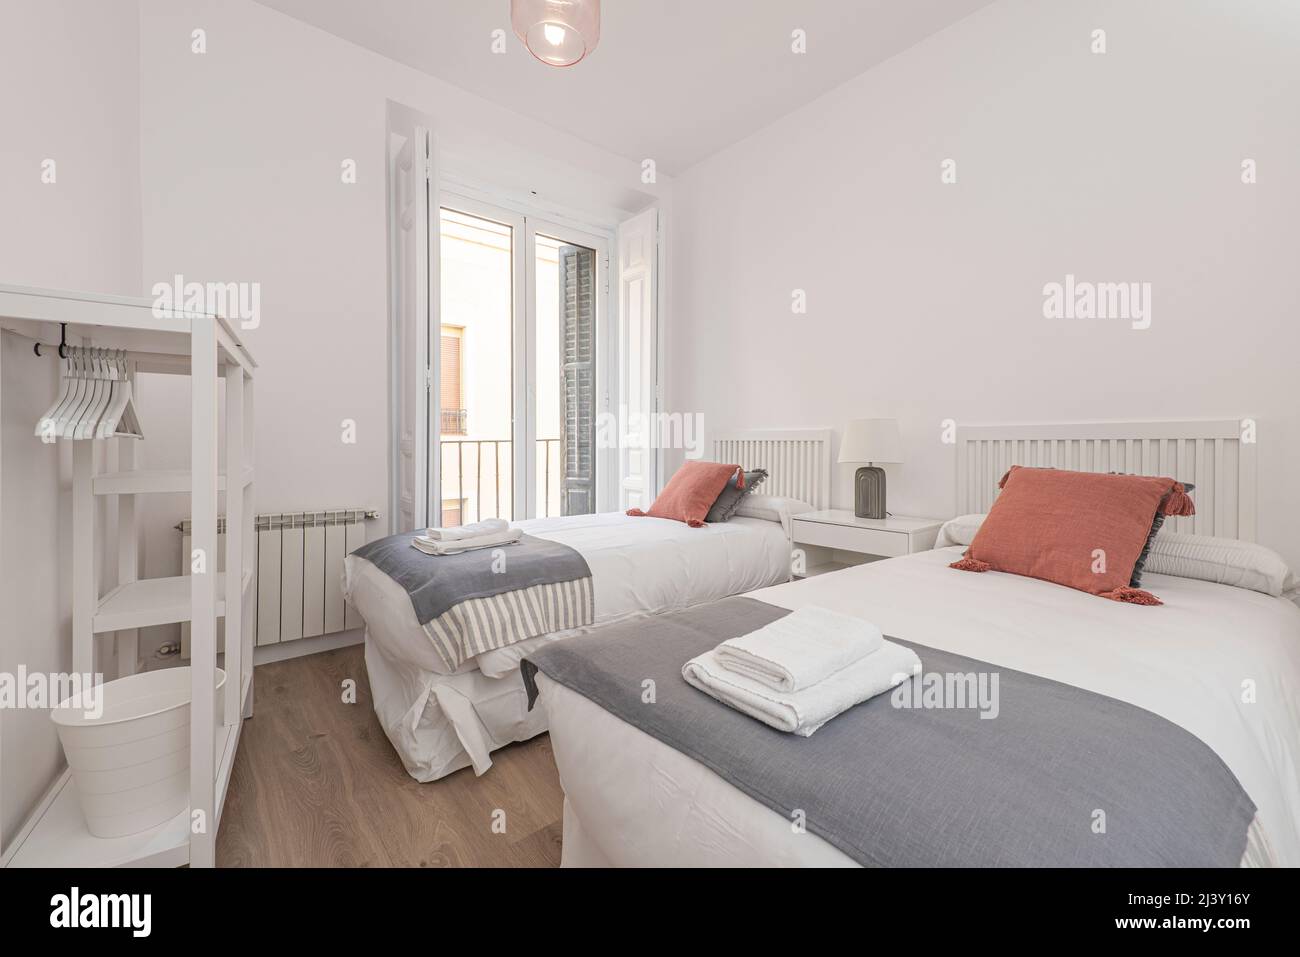 Interno luminoso e moderno della camera da letto con piccolo comodino in  legno, giardino in un barattolo, biancheria da letto bianca, cuscini  colorati e coperta. spazio con pareti blu e parquet in